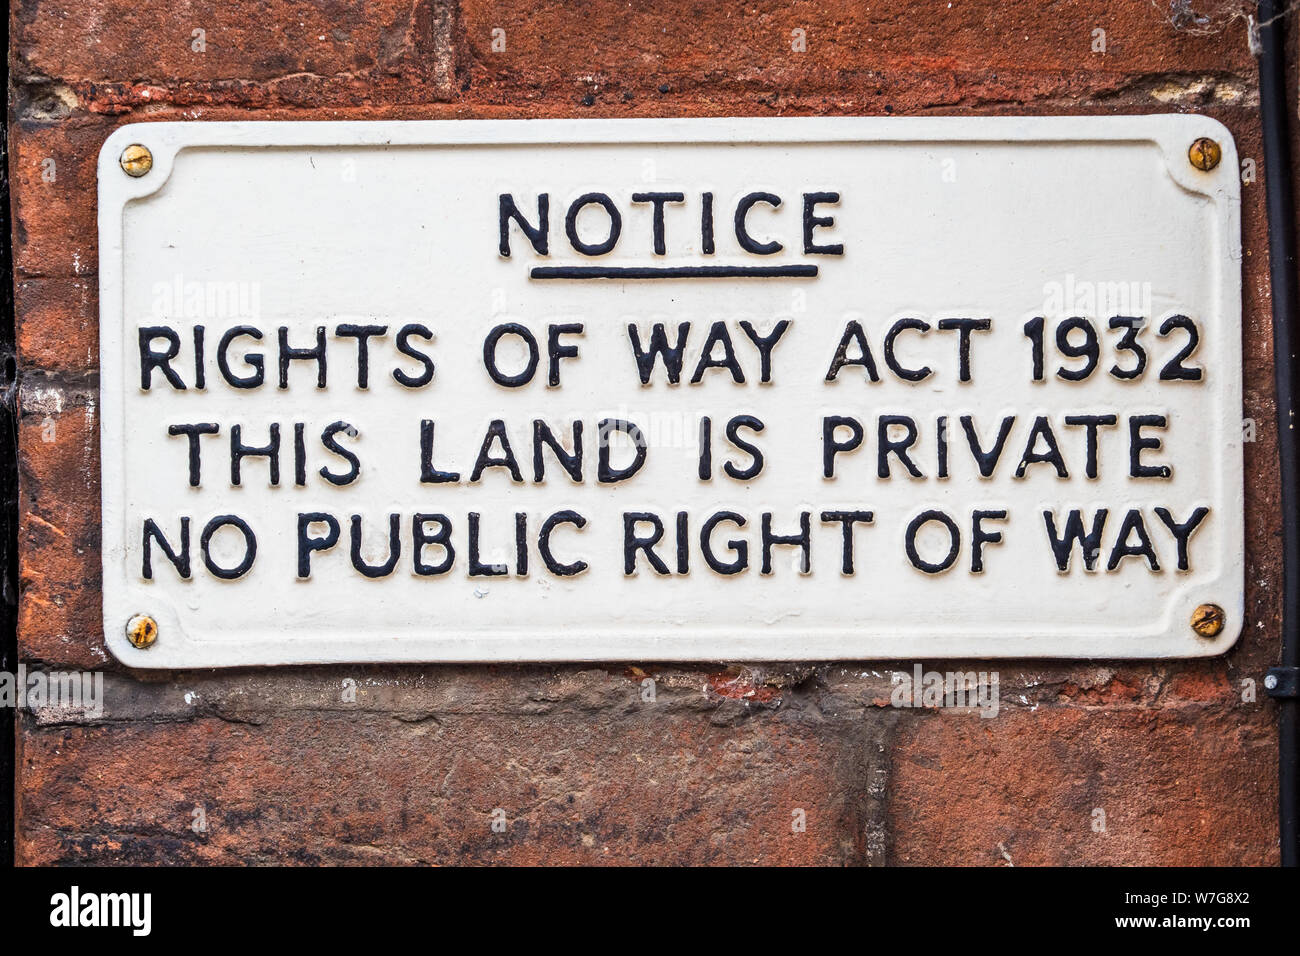 Wegerechte beachten Schild - Rechte der Art und Weise handeln 1932 dieses Land ist Privat ohne öffentliche Vorfahrt Stockfoto